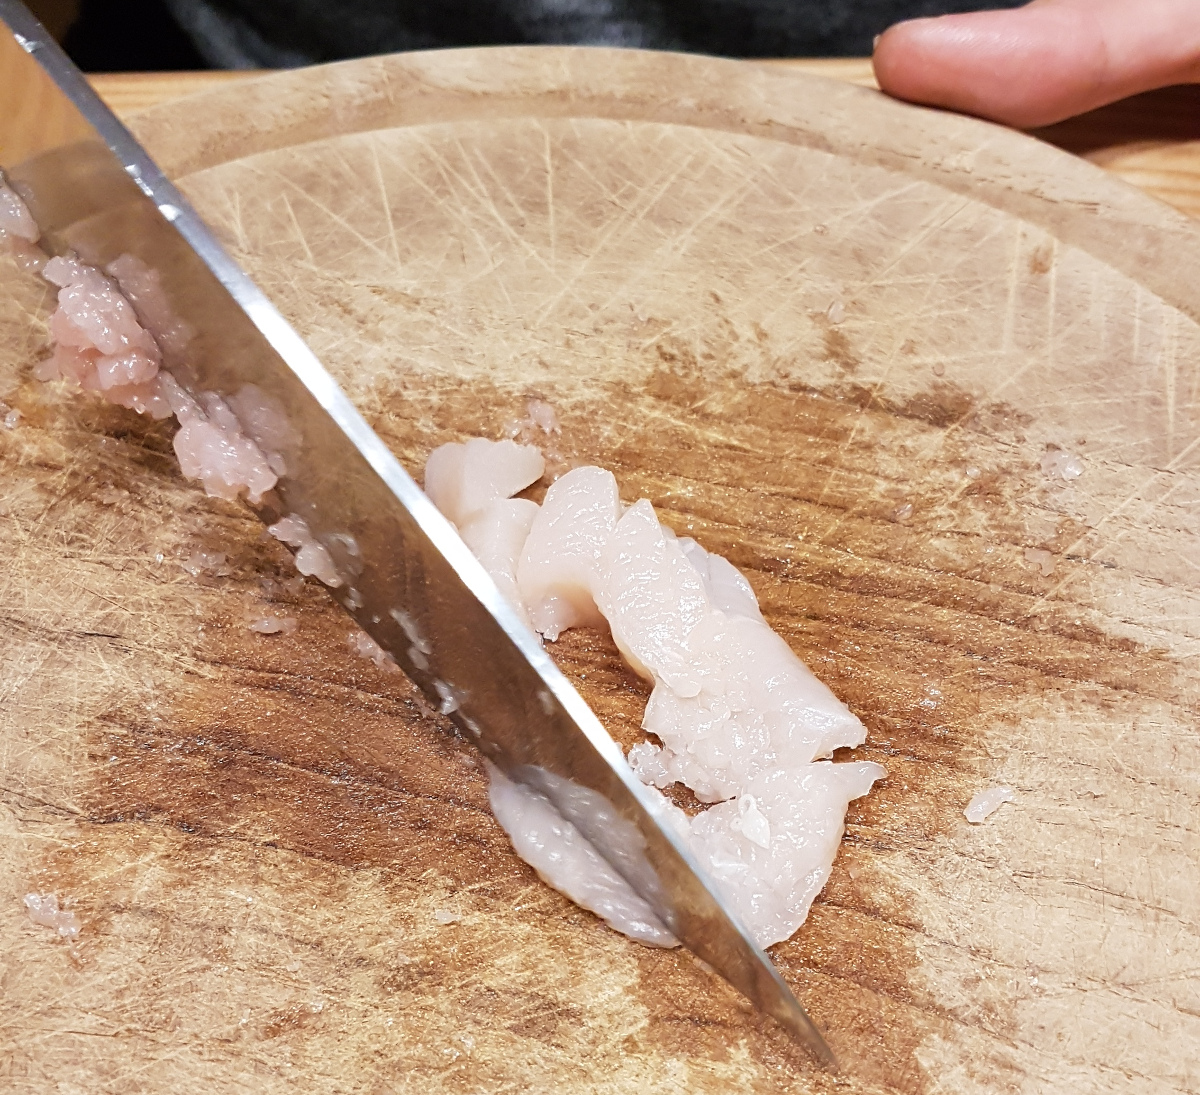 Chop chicken into fine pieces